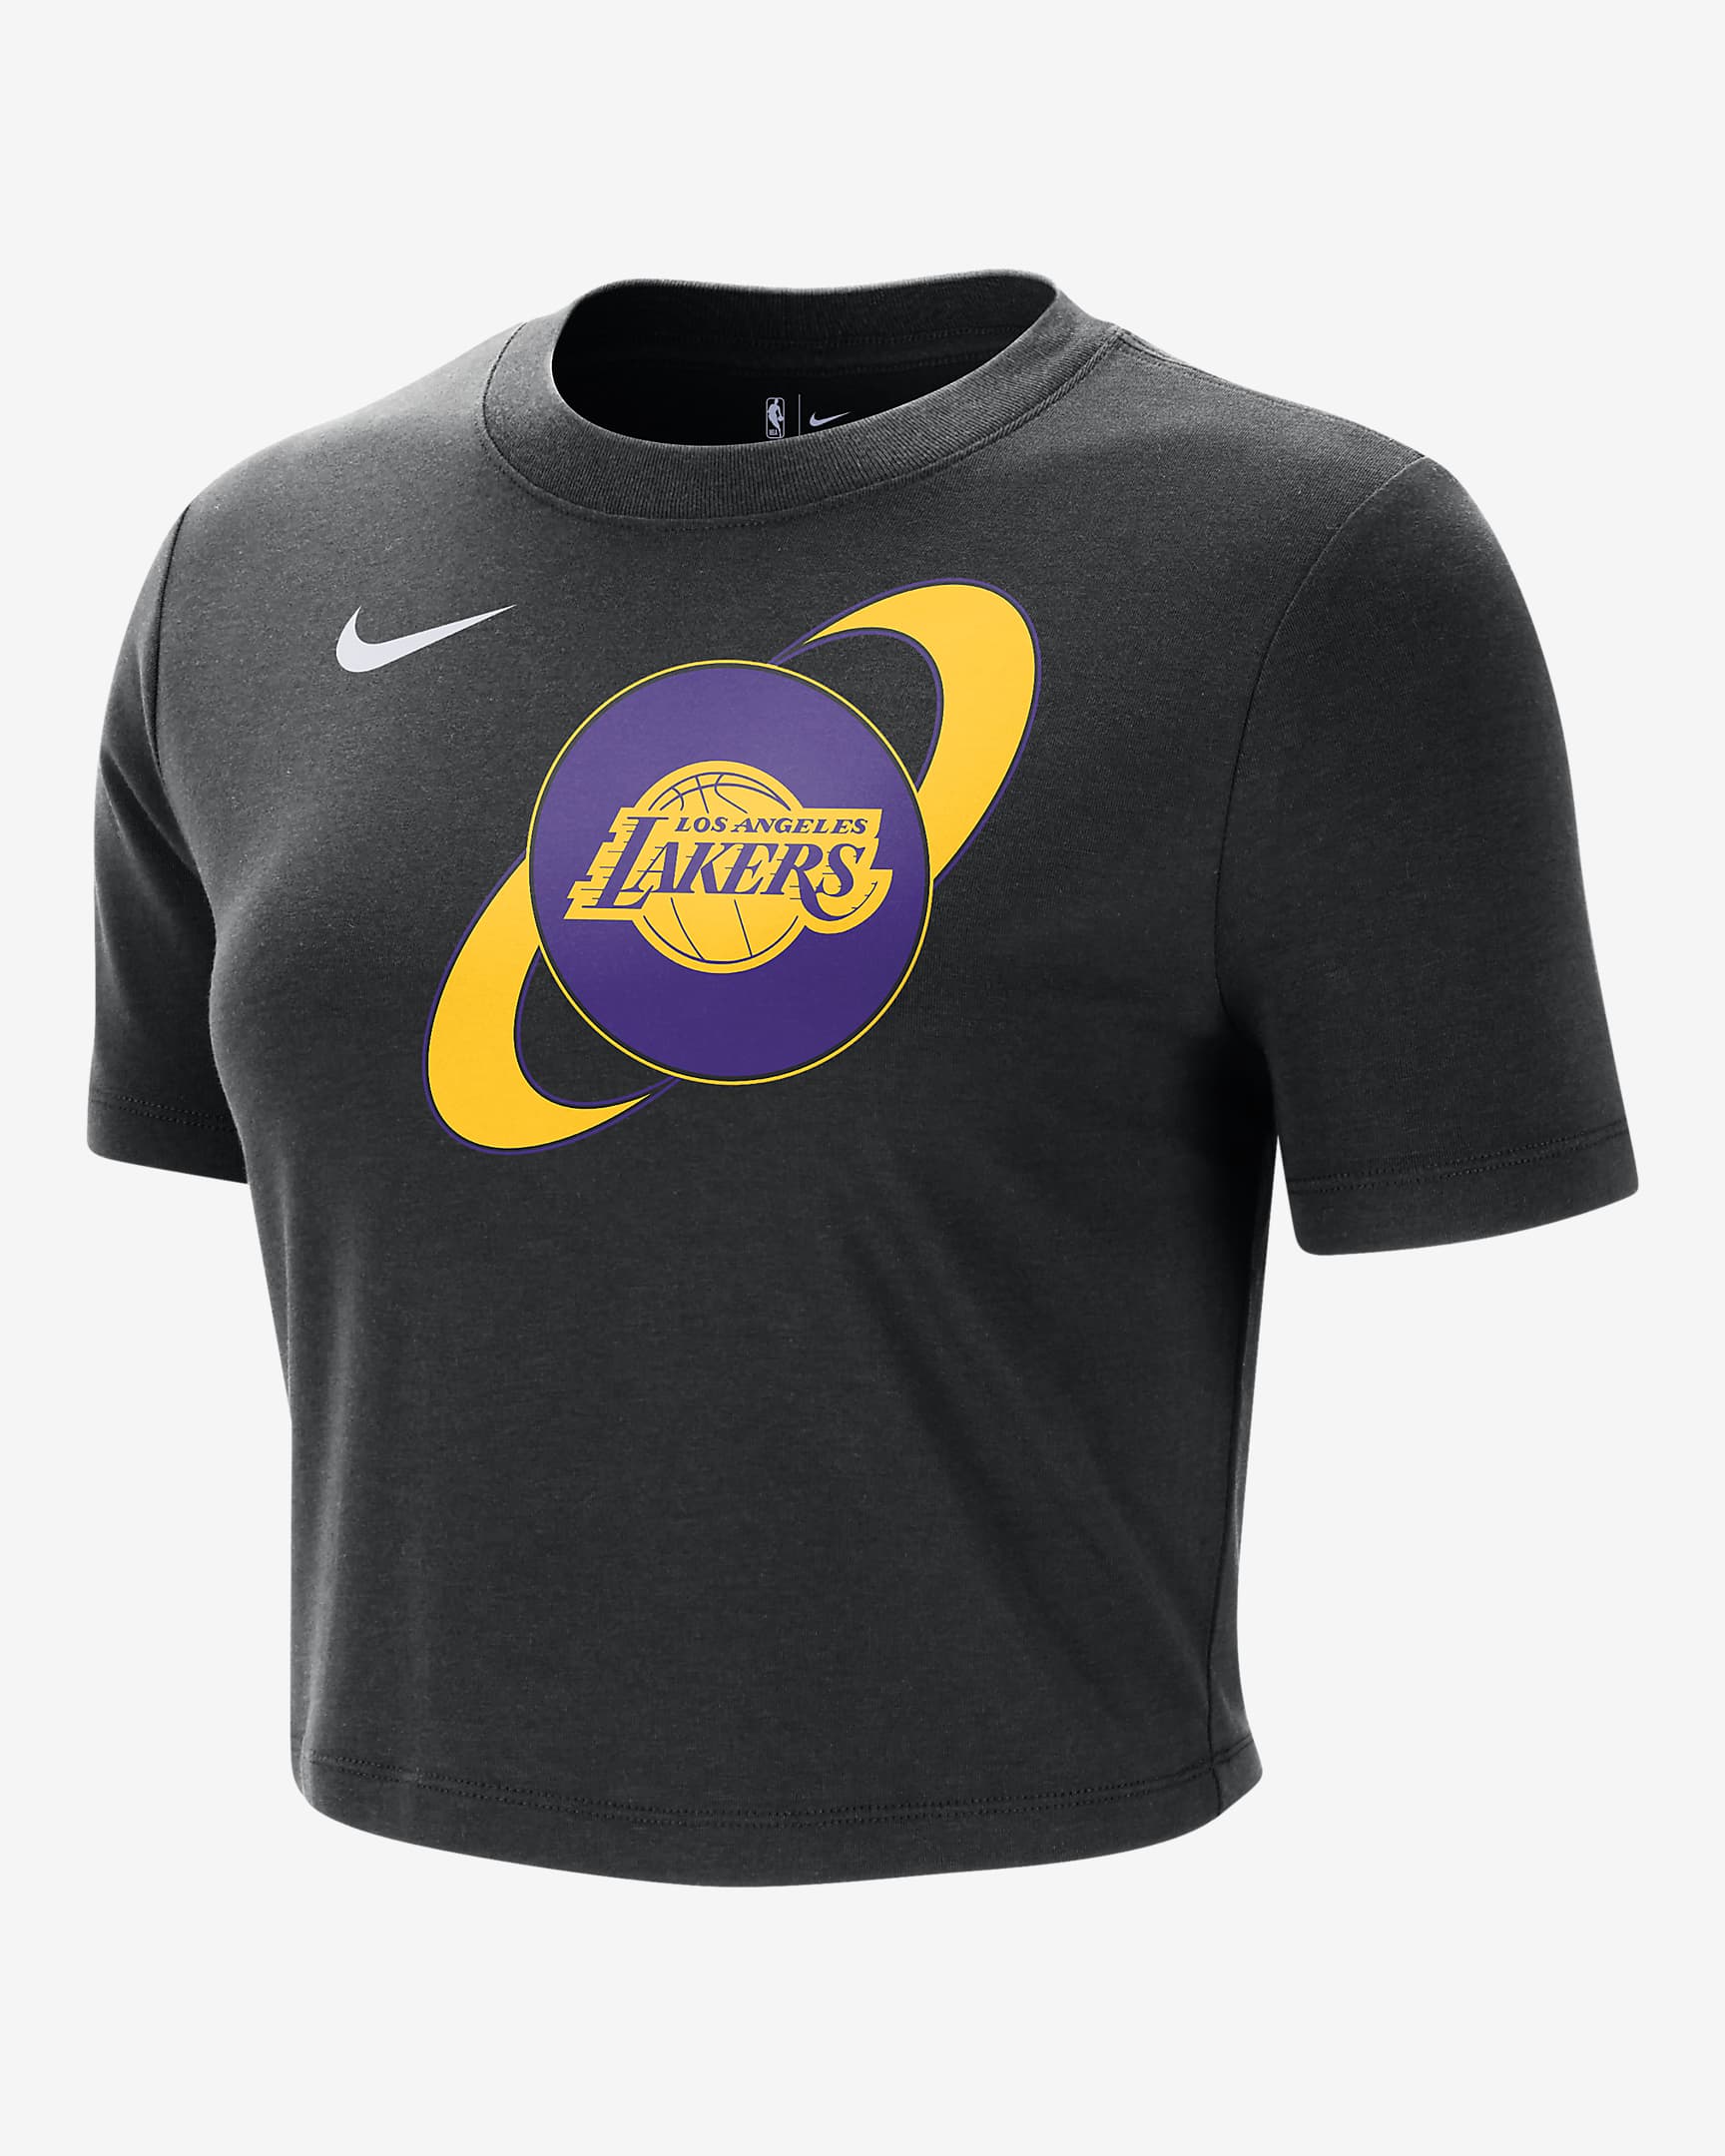 Playera Nike de la NBA slim y cropped para mujer Los Angeles Lakers ...